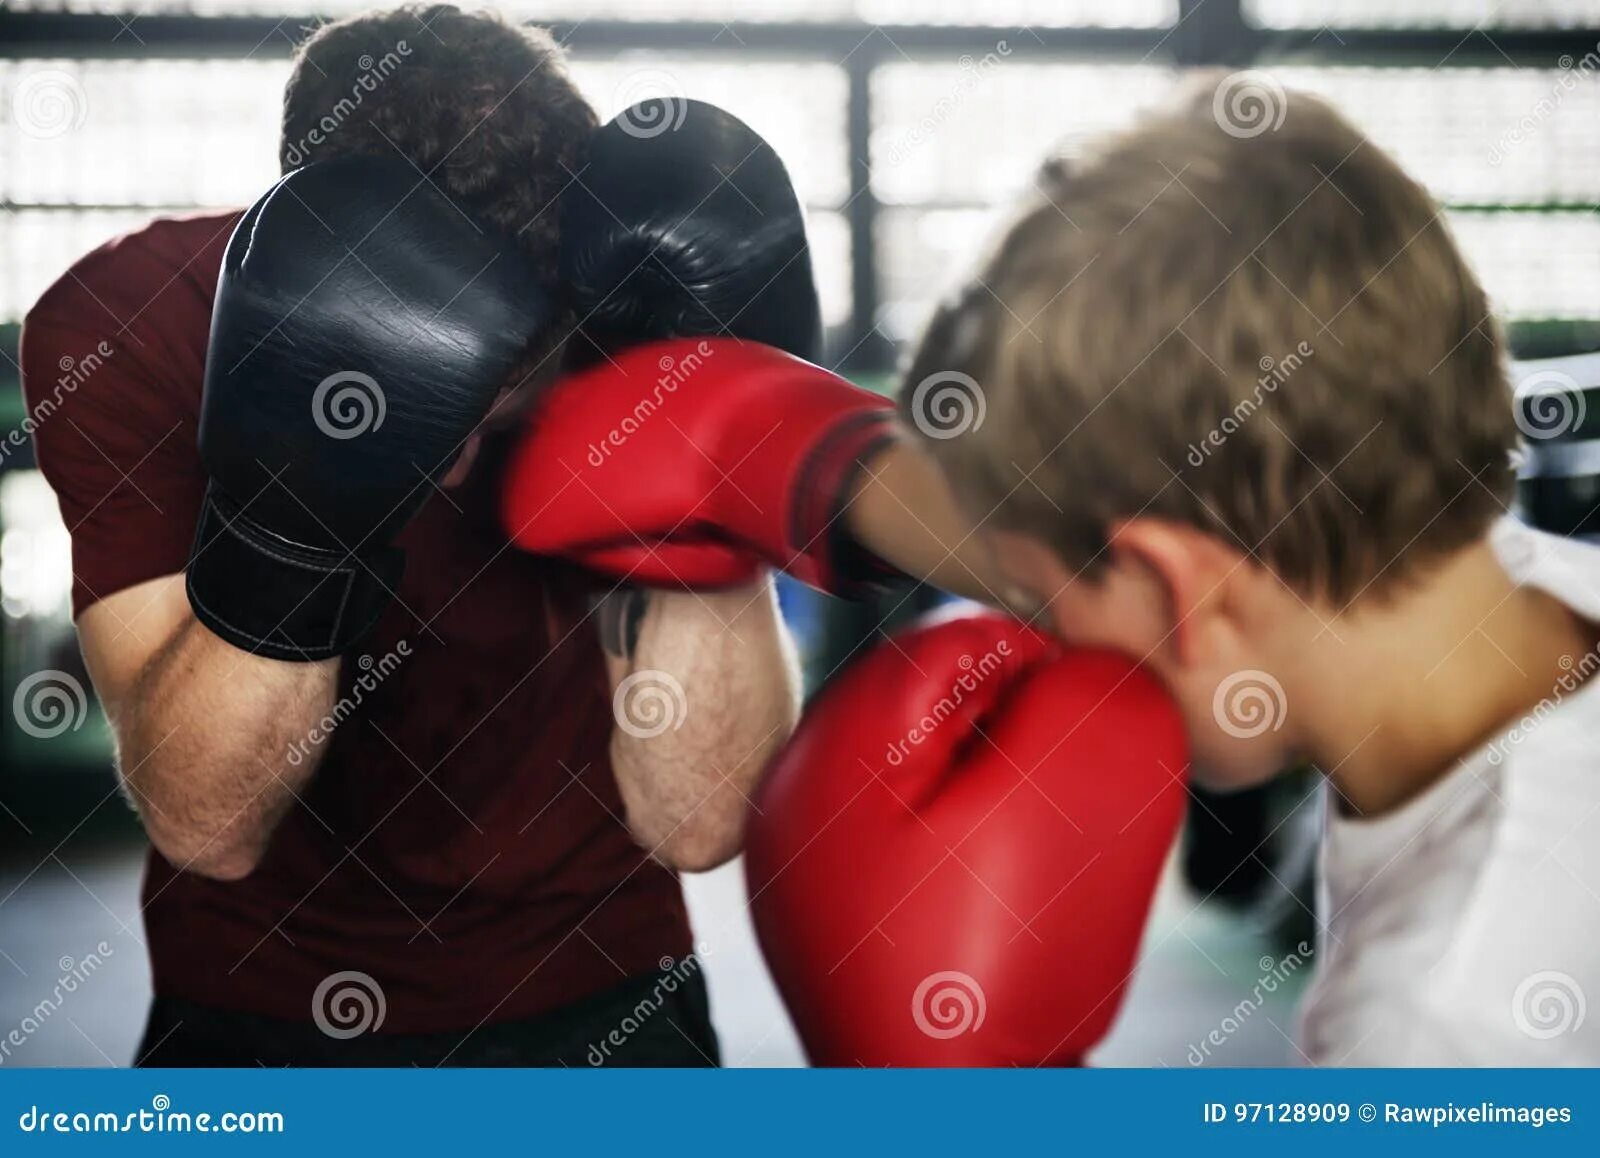 Боксеры были сильнее. Парни в боксерах. Боксер со спины. Боксер и тренер. Психологические упражнения для боксера.